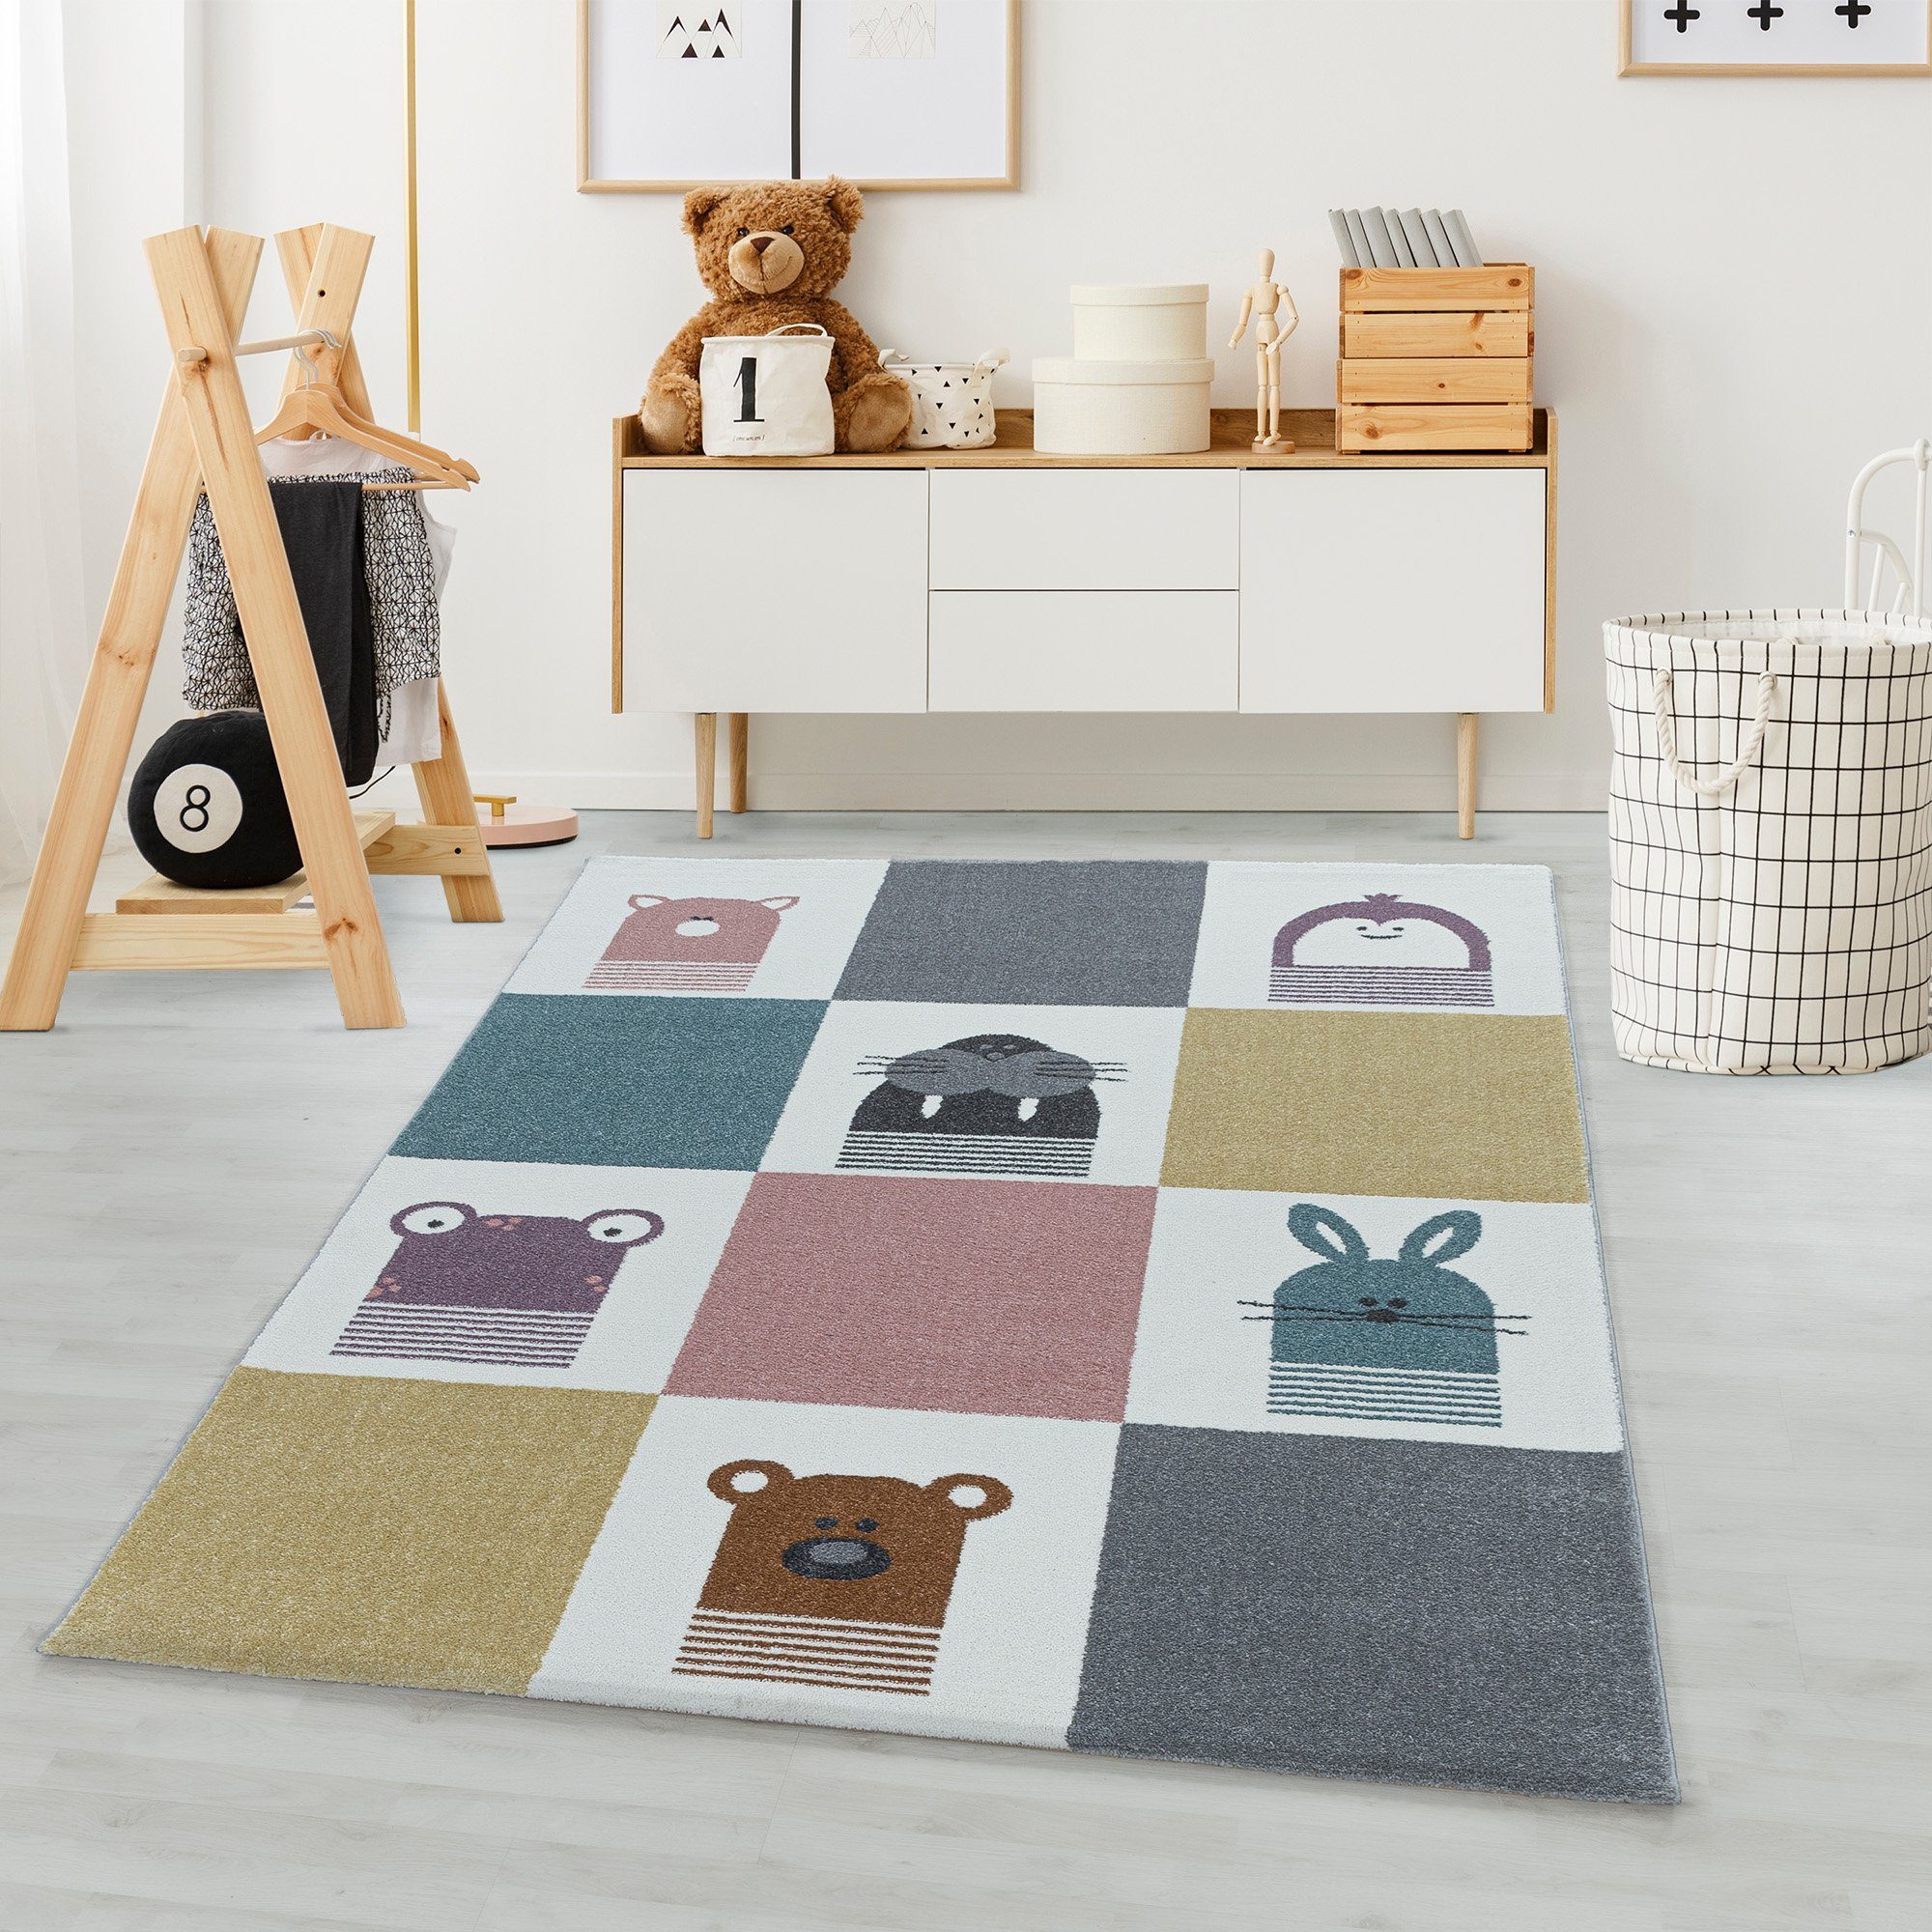 Kinderteppich Tierdesign, Carpetsale24, Rund, Höhe: 11 mm, Kinderteppich TierDesign Bunt Teppich für Kinder Teppich Kinderzimmer